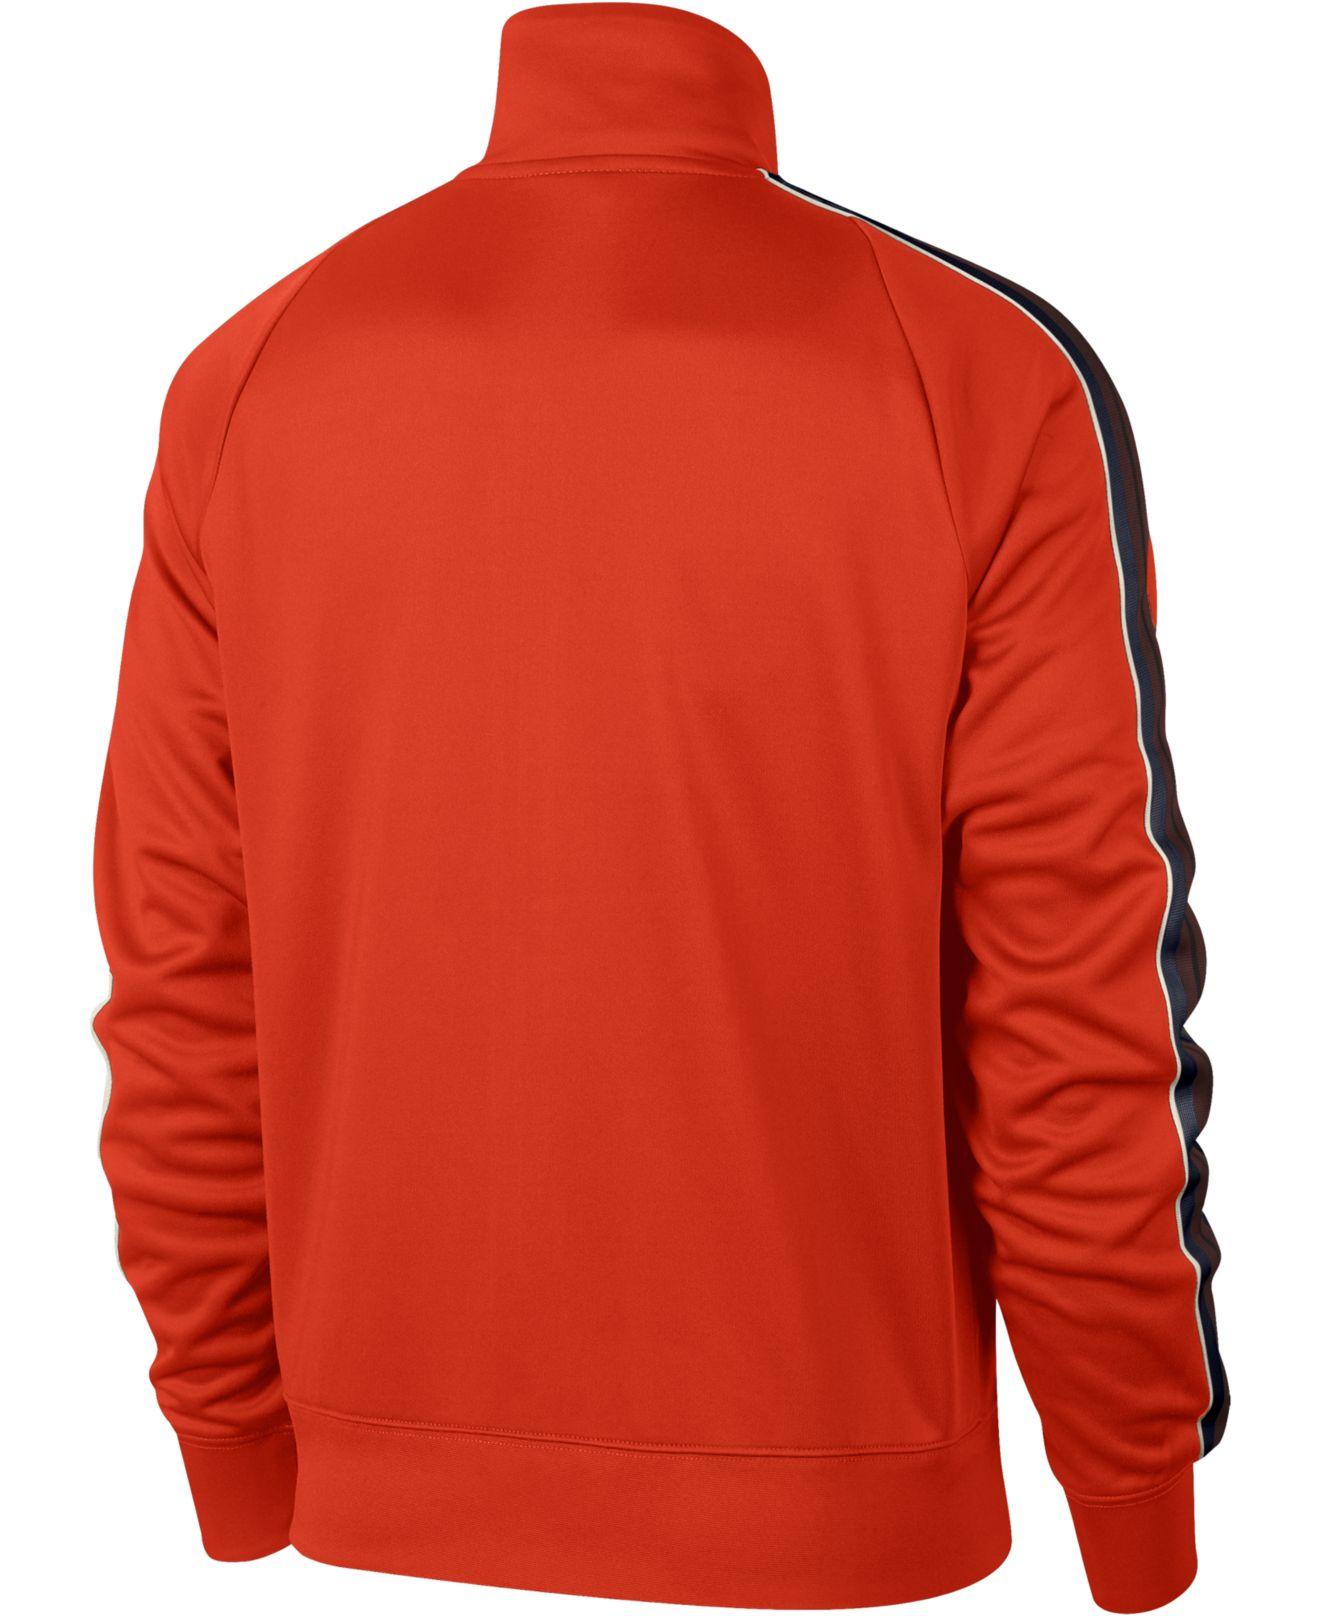 Nike Sportswear Track Jacket in Orange for Men - Lyst